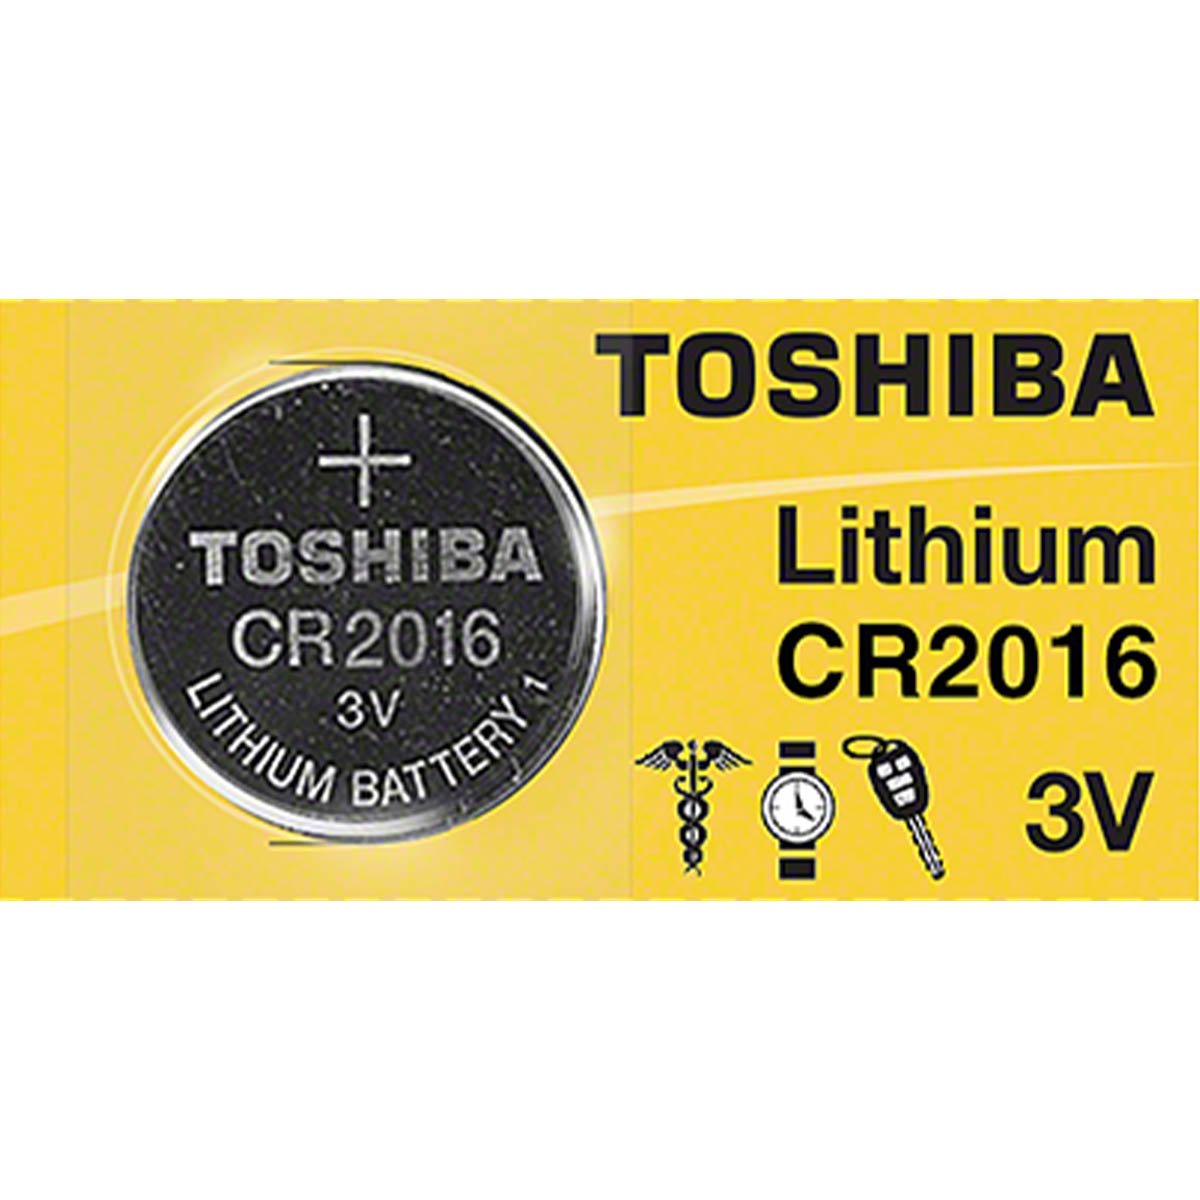 3V Lithium Battery